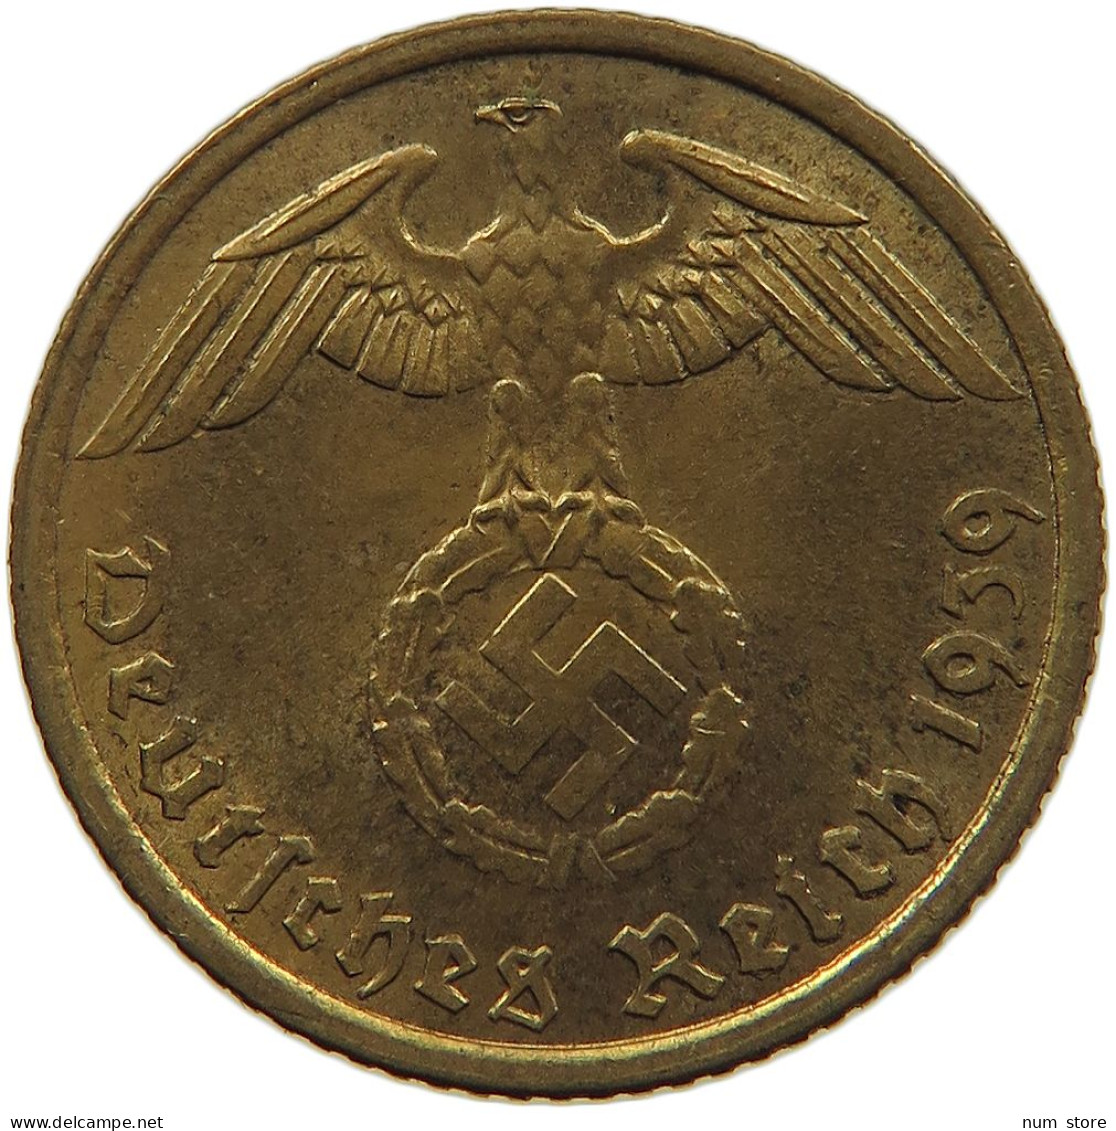 GERMANY 5 REICHSPFENNIG 1939 A #s091 0573 - 5 Reichspfennig